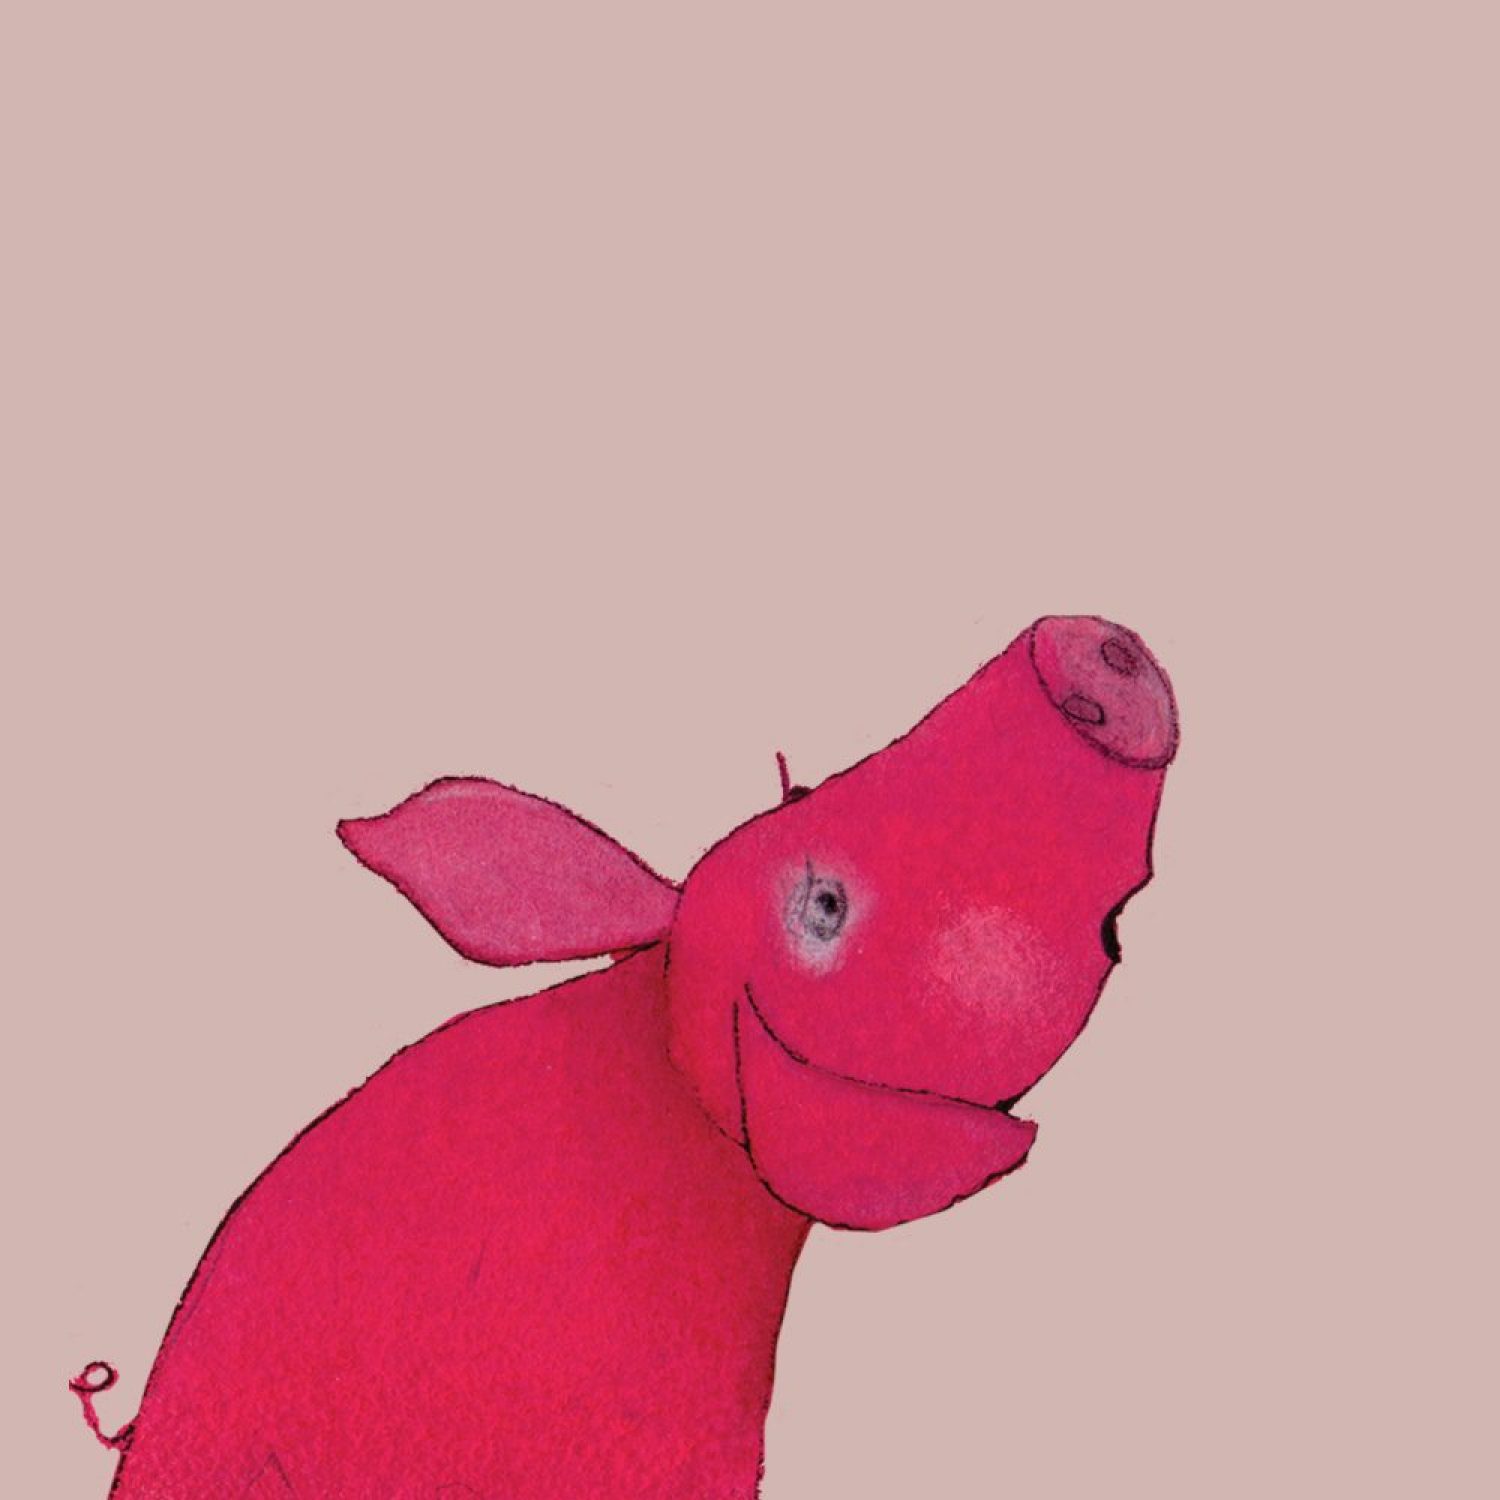 dominika-przybylska-kinder-illustration-baby-pig-02